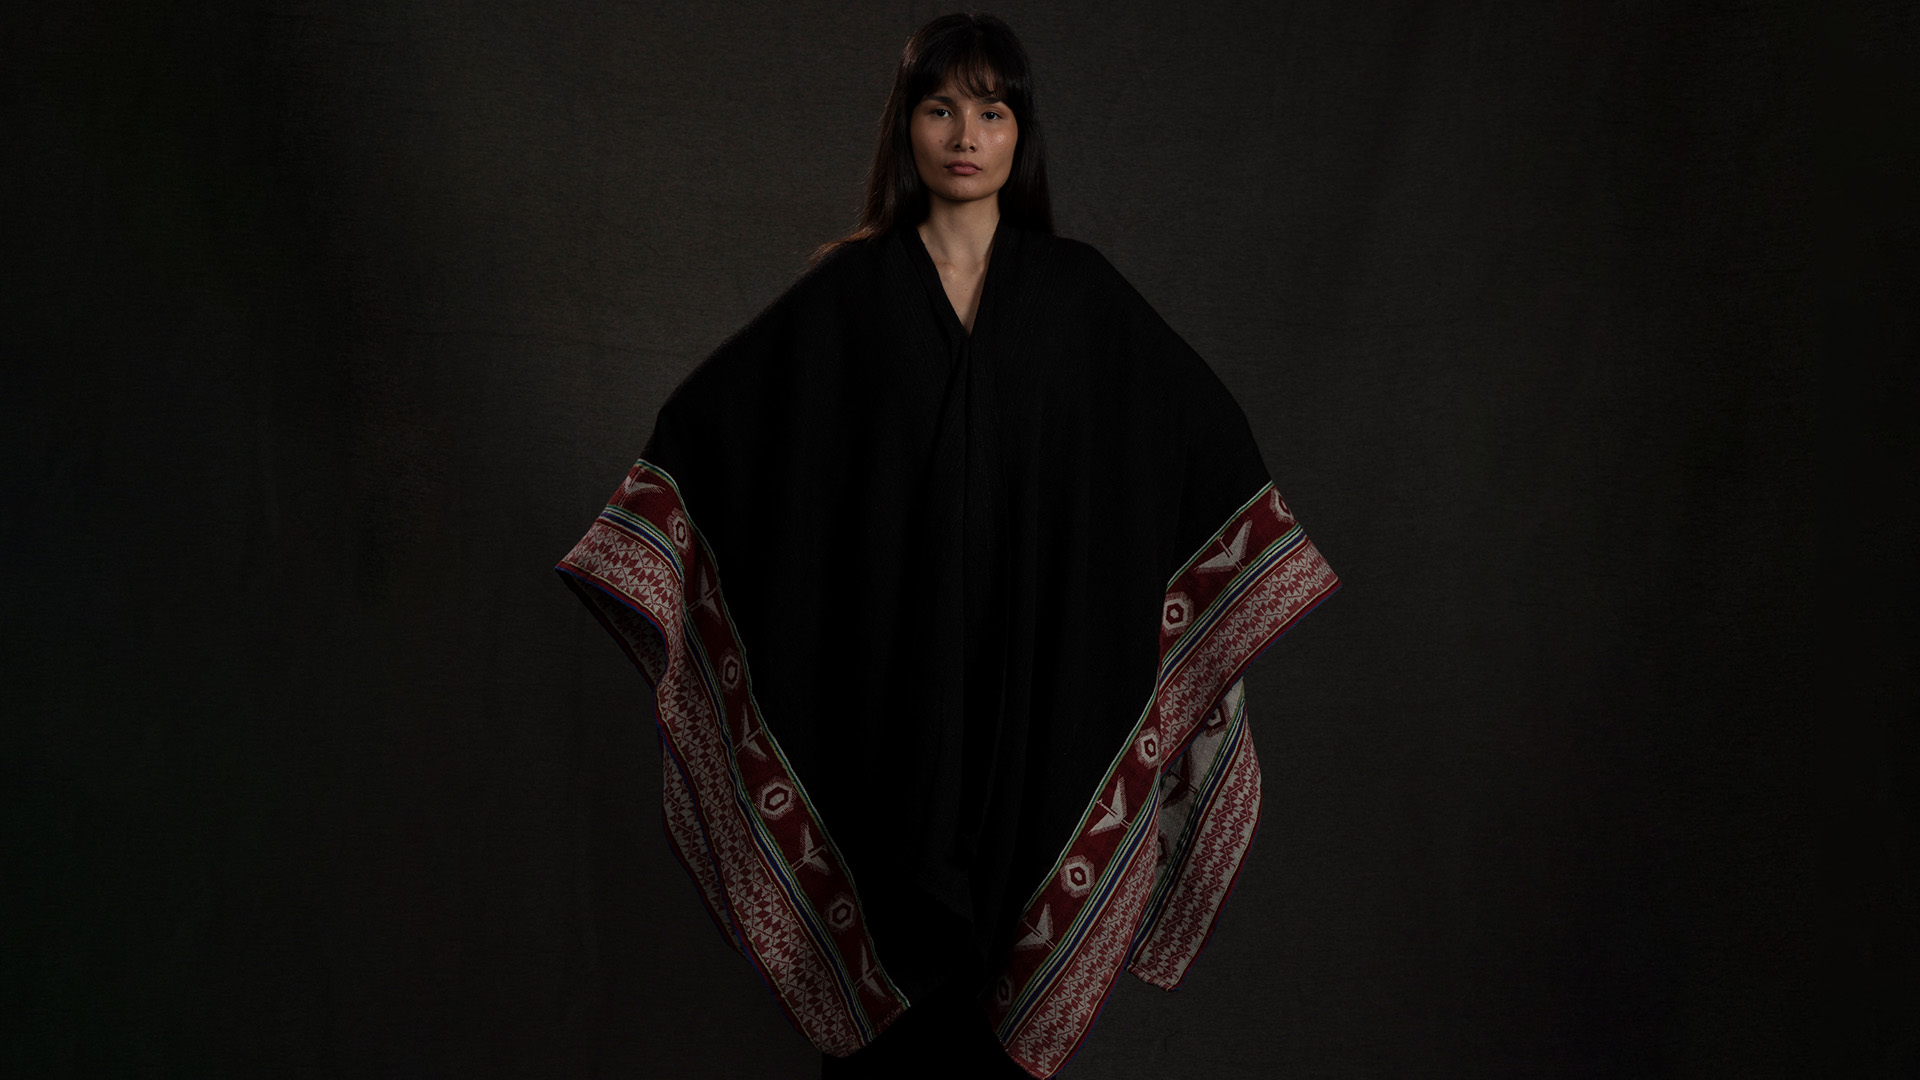 Modelo vestida con una capa con motivos indígenas de el ruedo.